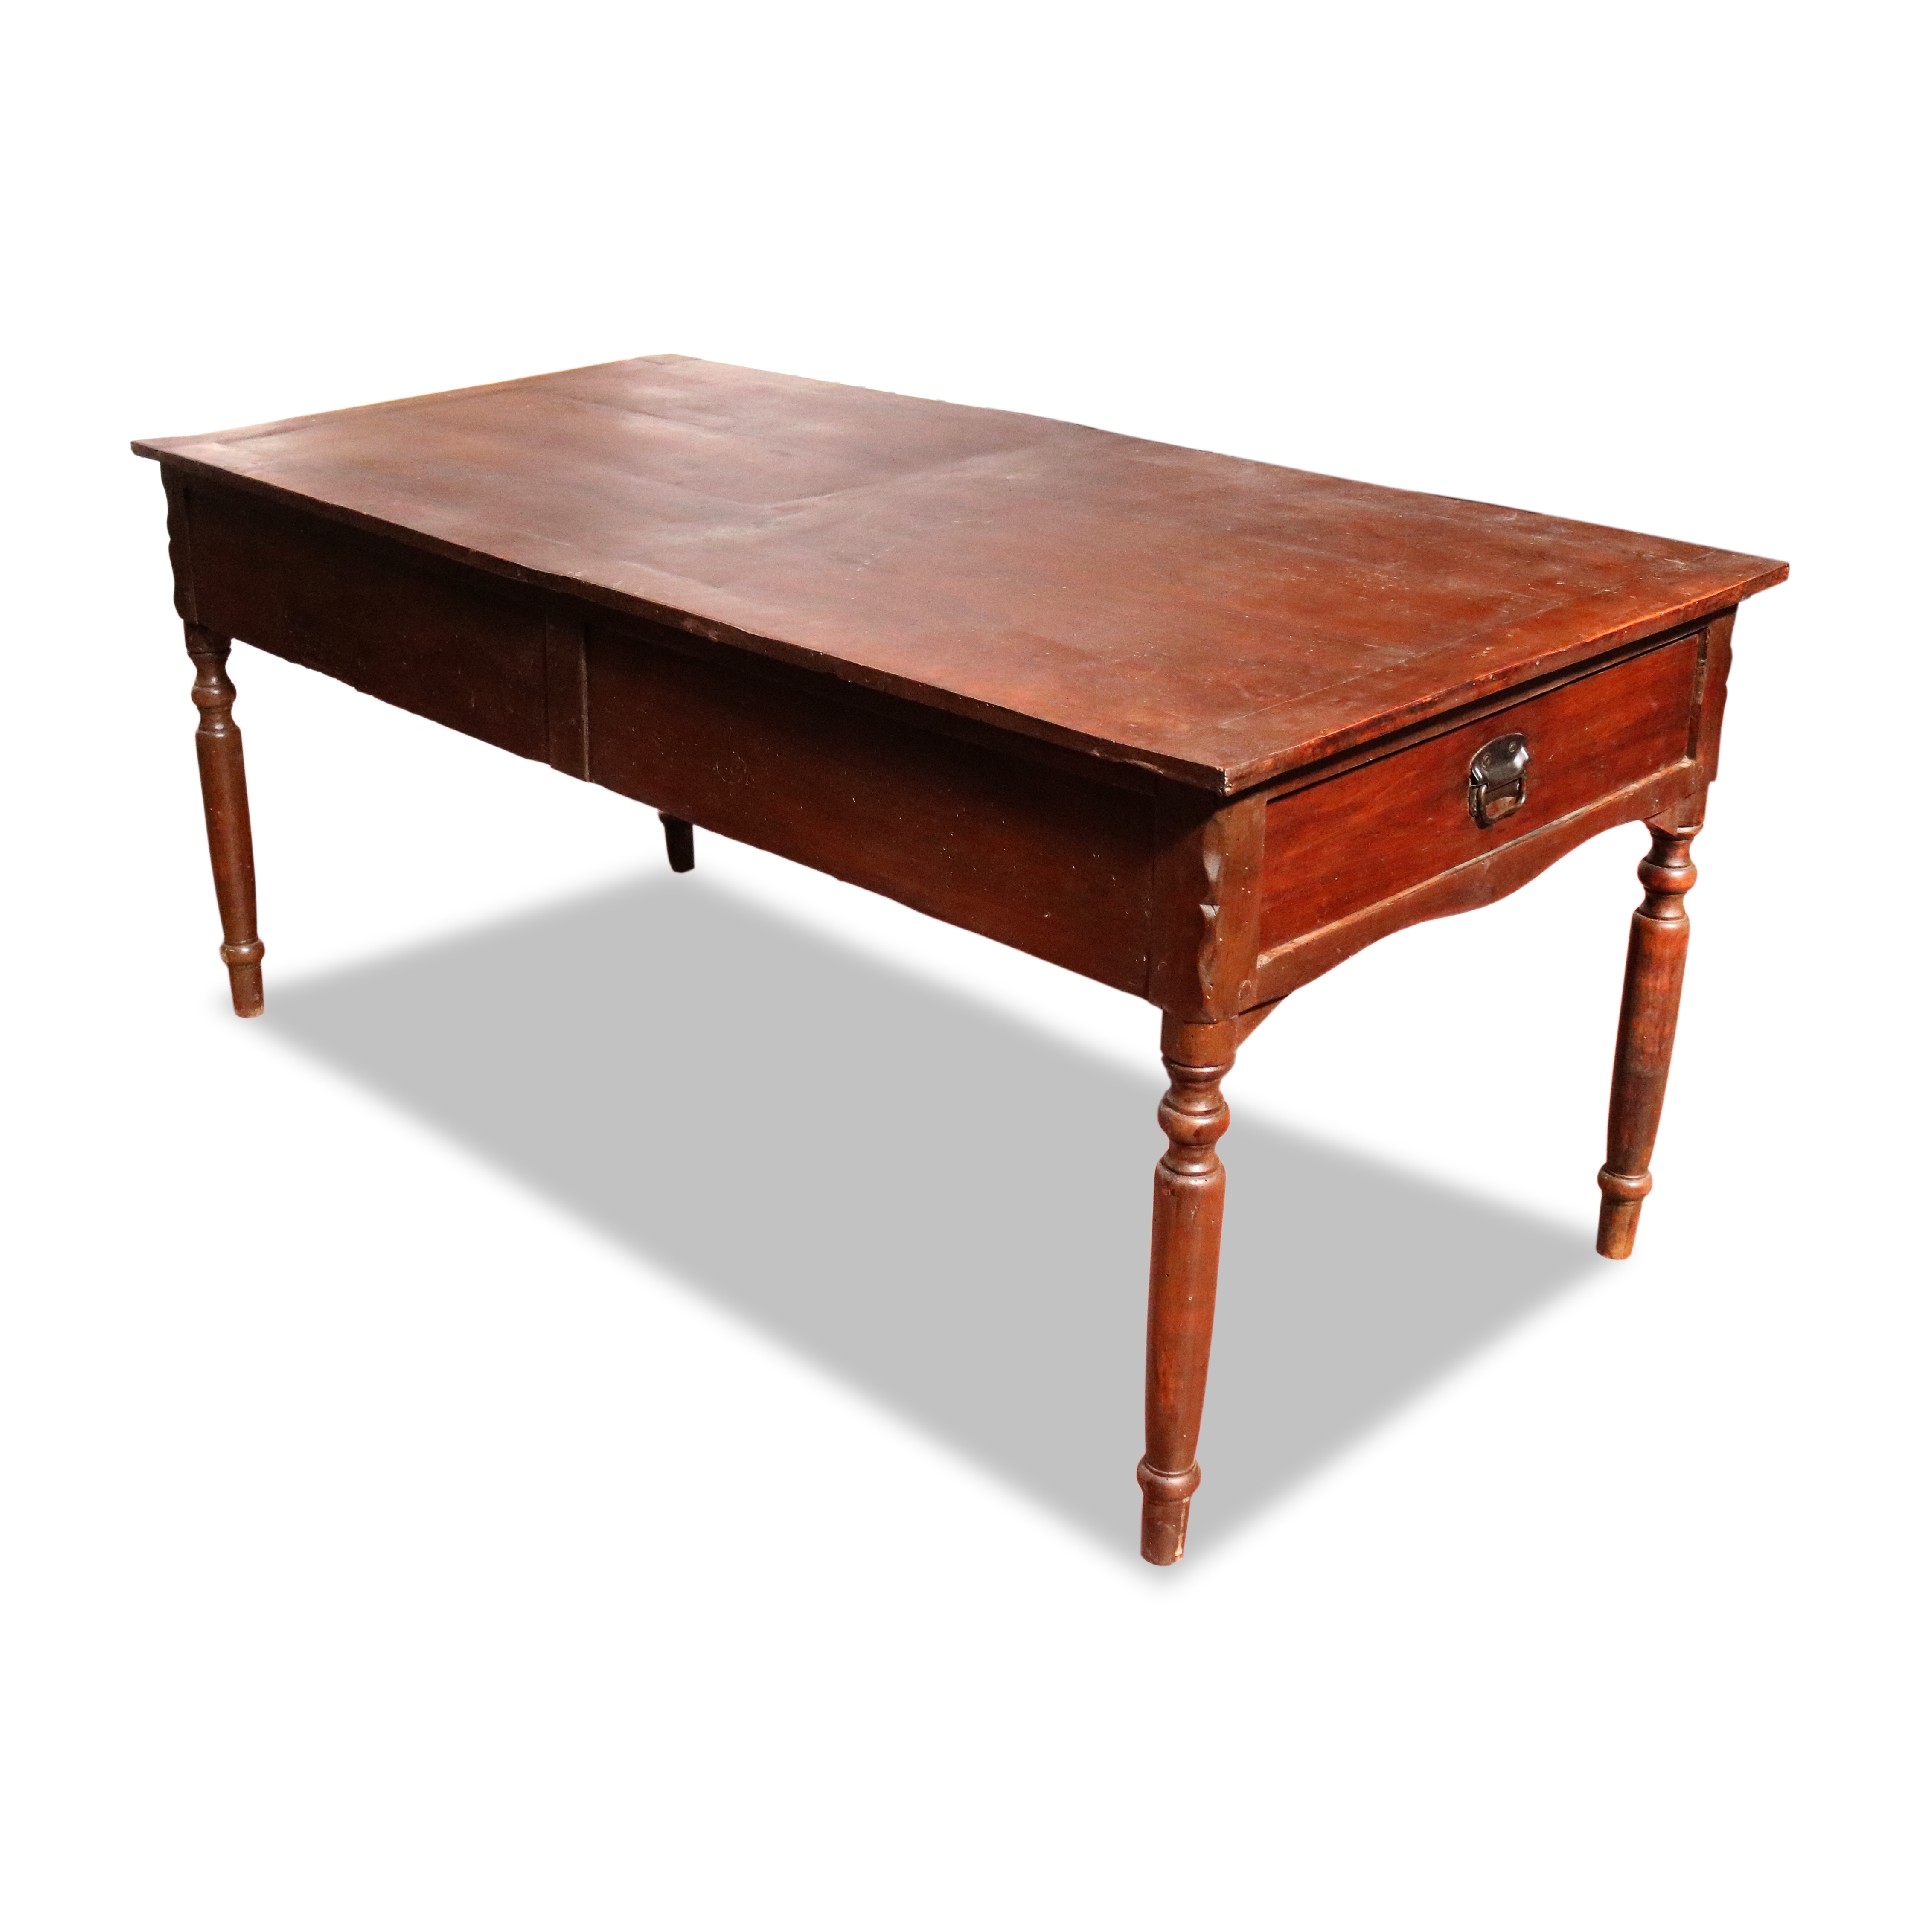 Antico tavolo in legno.  - Tavoli in legno - Tavoli e complementi - Prodotti - Antichità Fiorillo